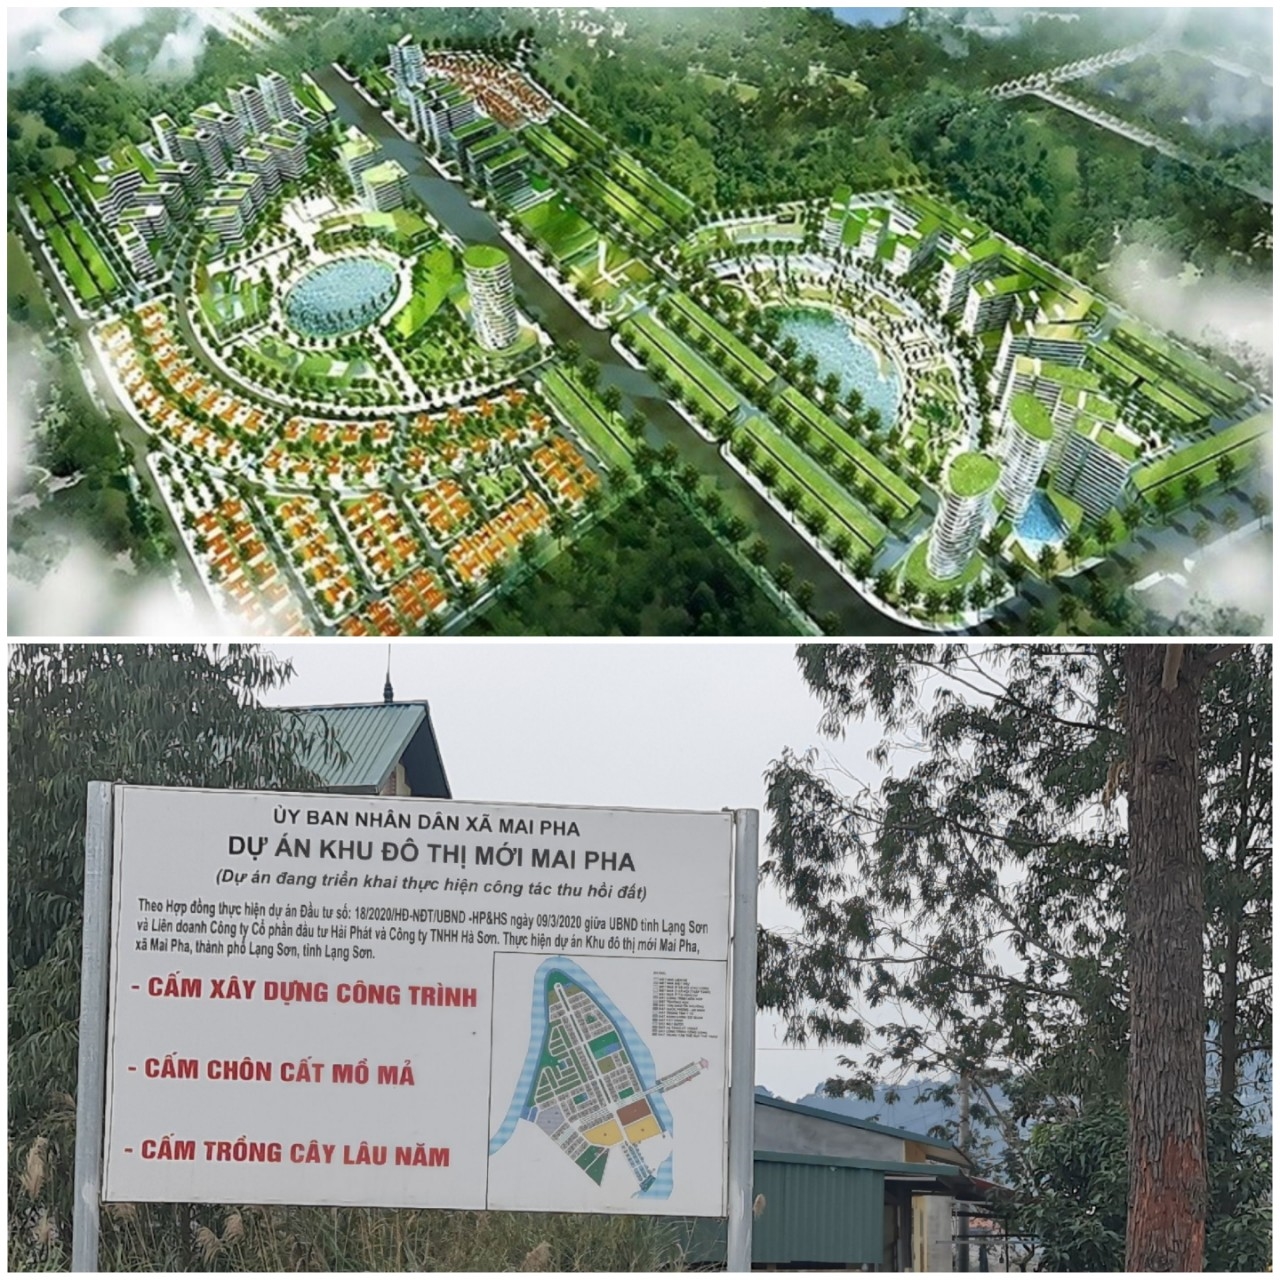 Dự án Khu Đô thị mới Mai Pha, TP. Lạng Sơn, tỉnh Lạng Sơn